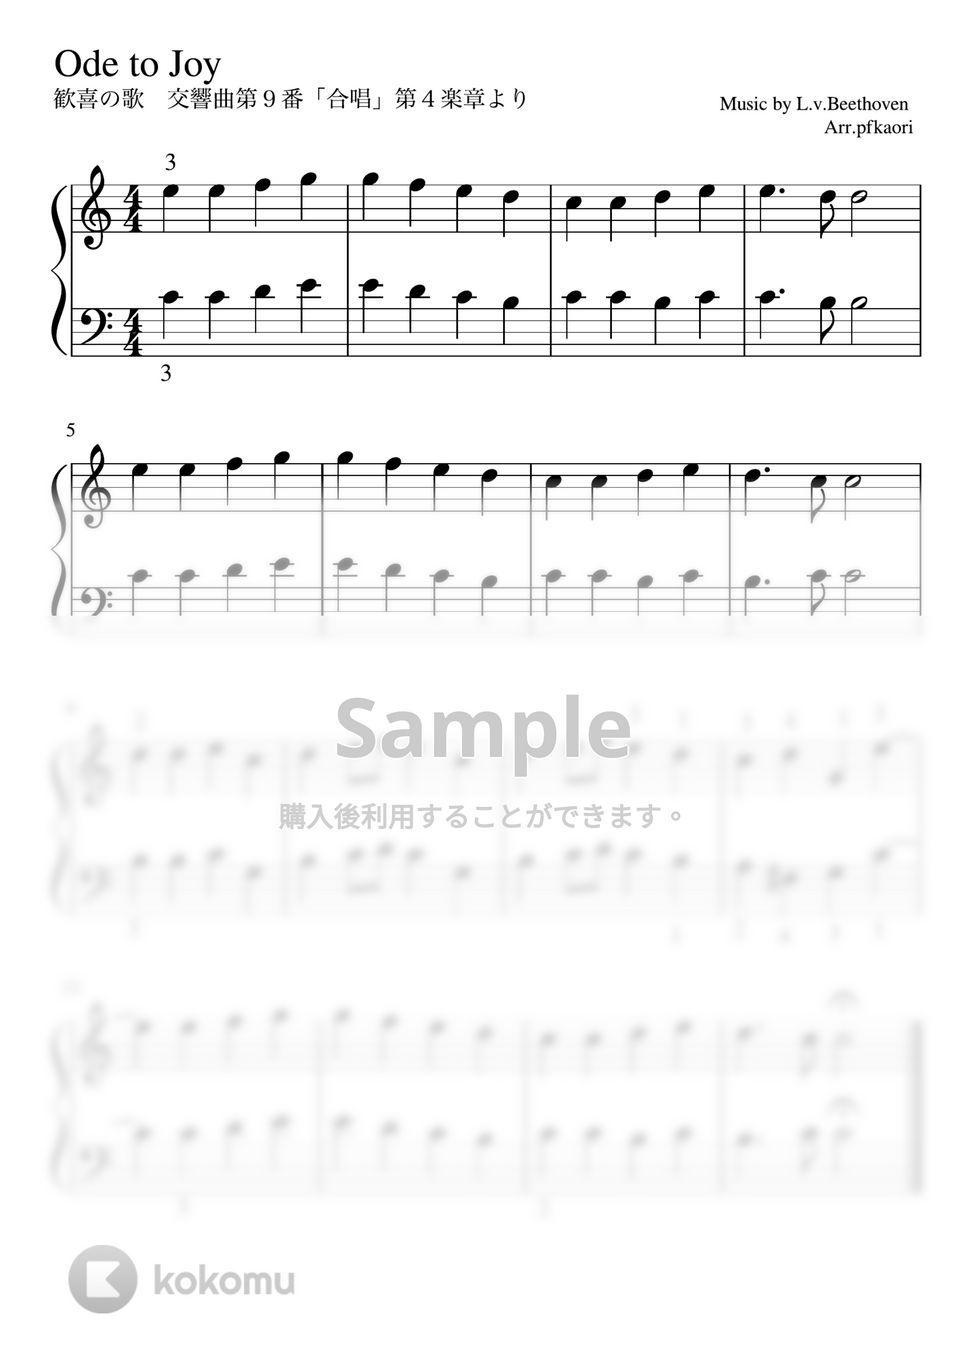 ベートーヴェン - 歓喜の歌 (Cdur・ピアノソロ初級) by pfkaori